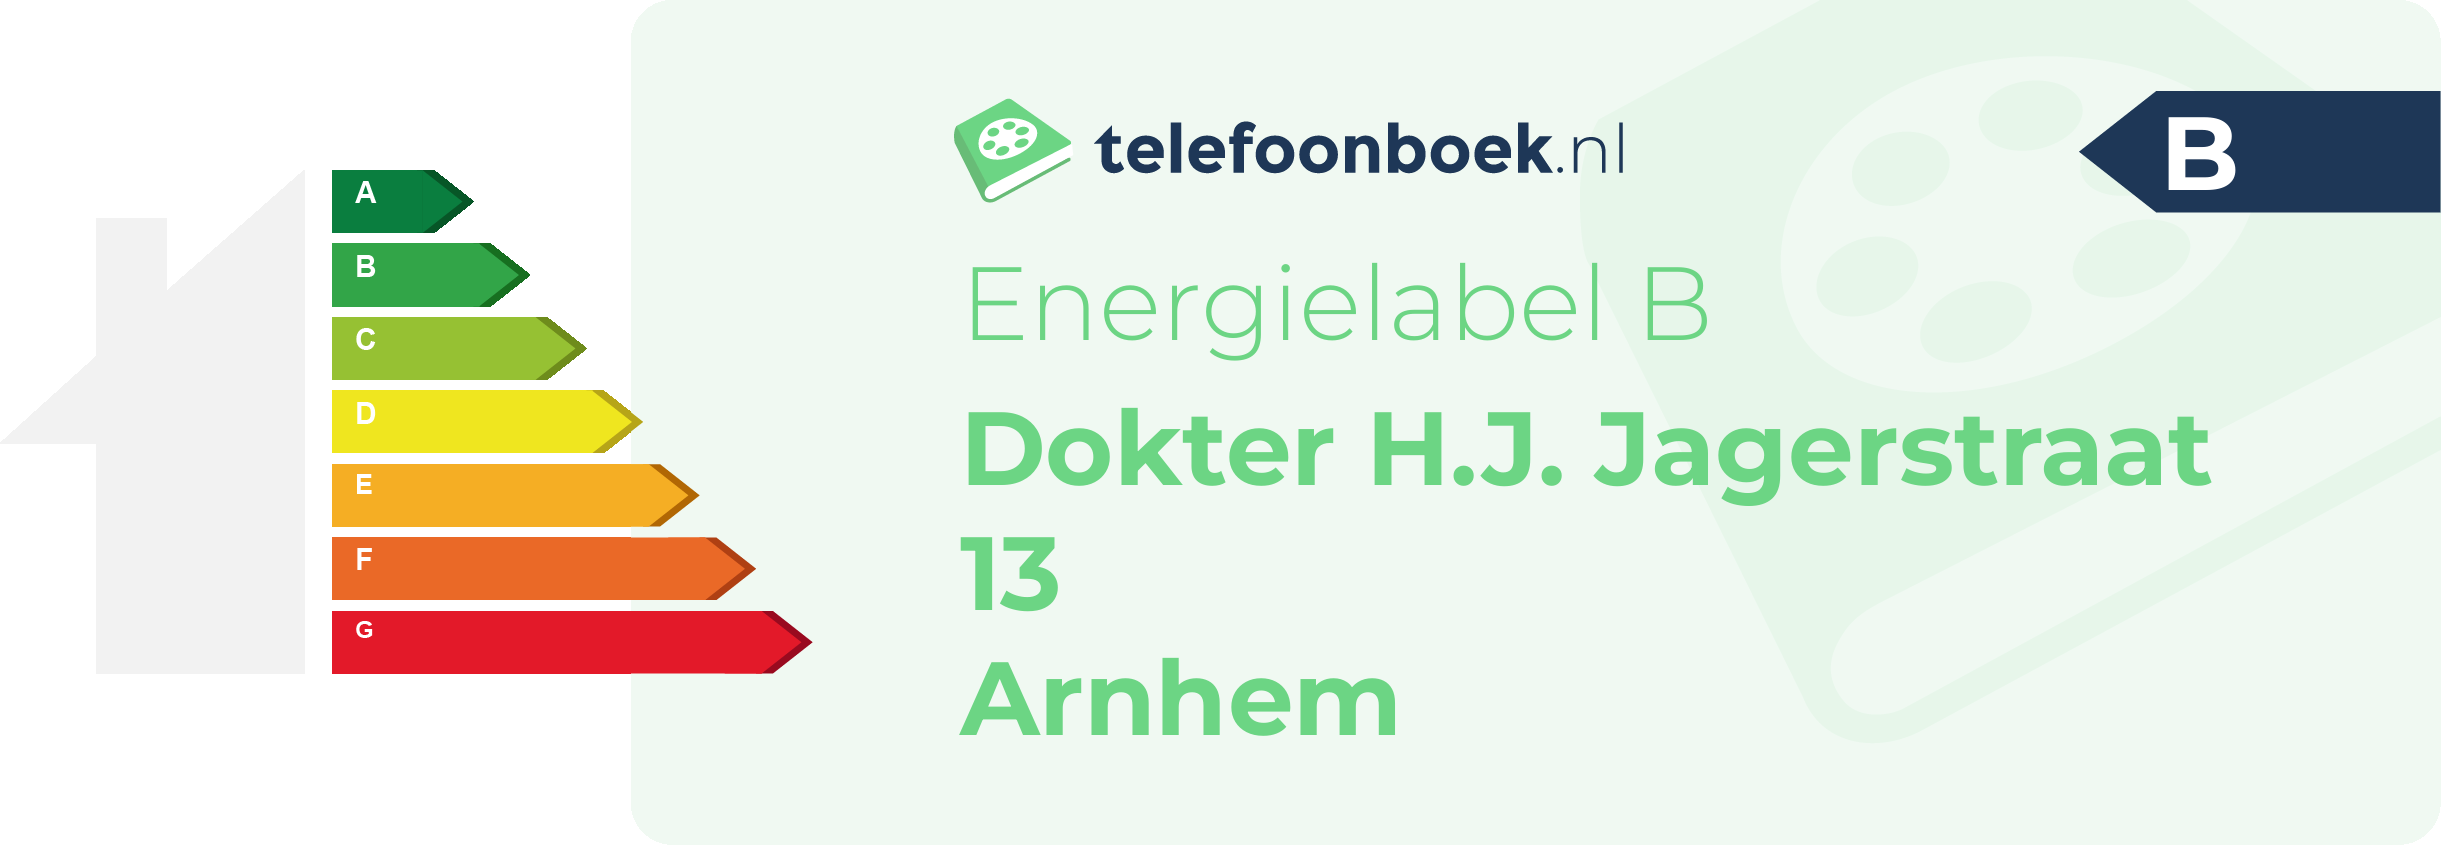 Energielabel Dokter H.J. Jagerstraat 13 Arnhem